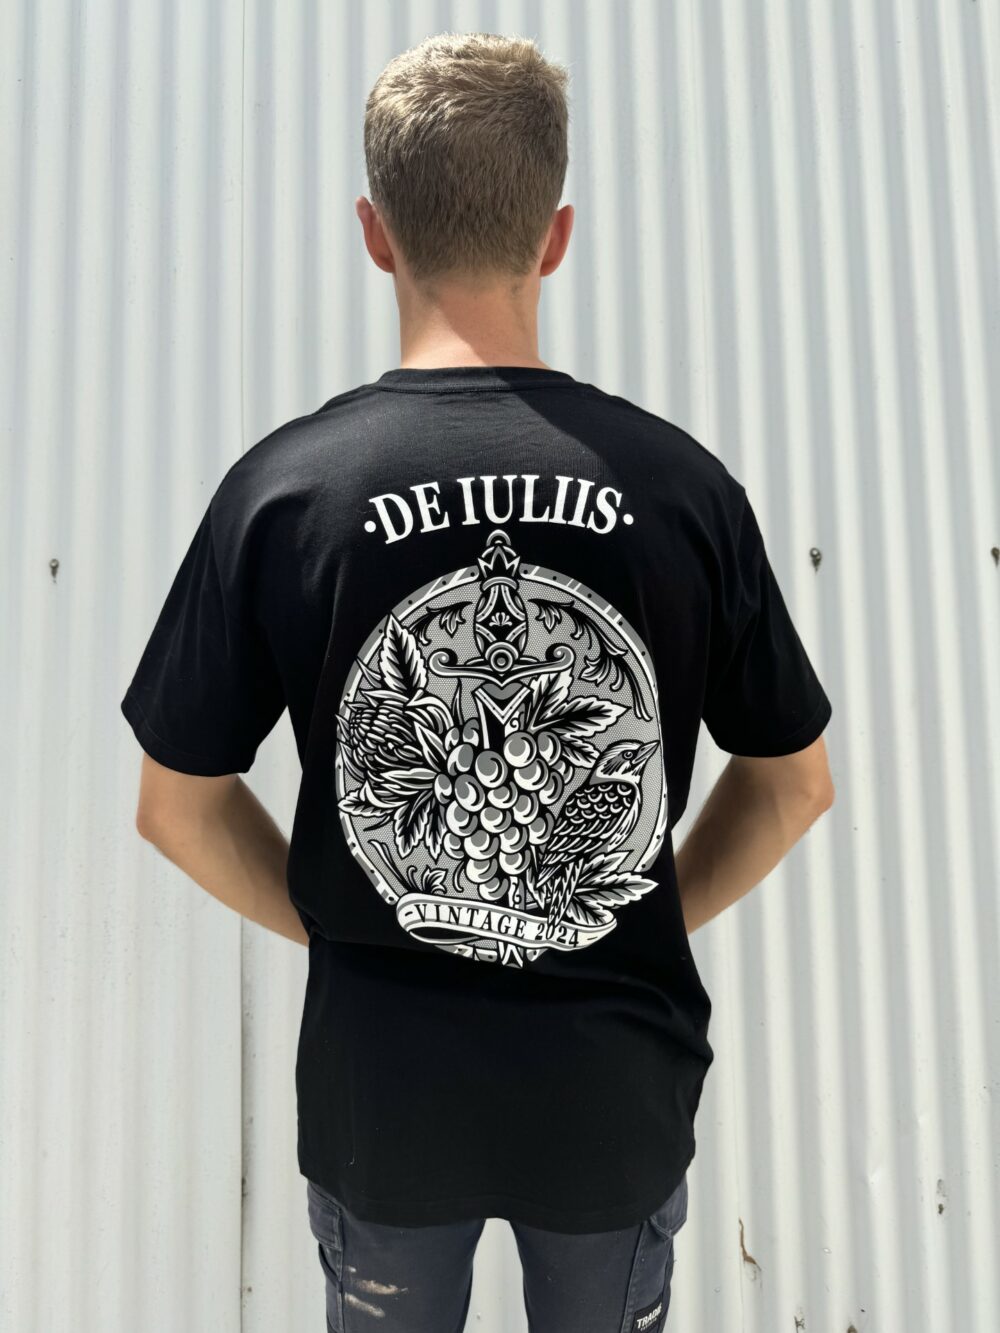 The new de iuliis vintage t shirt designed by Steen Jones